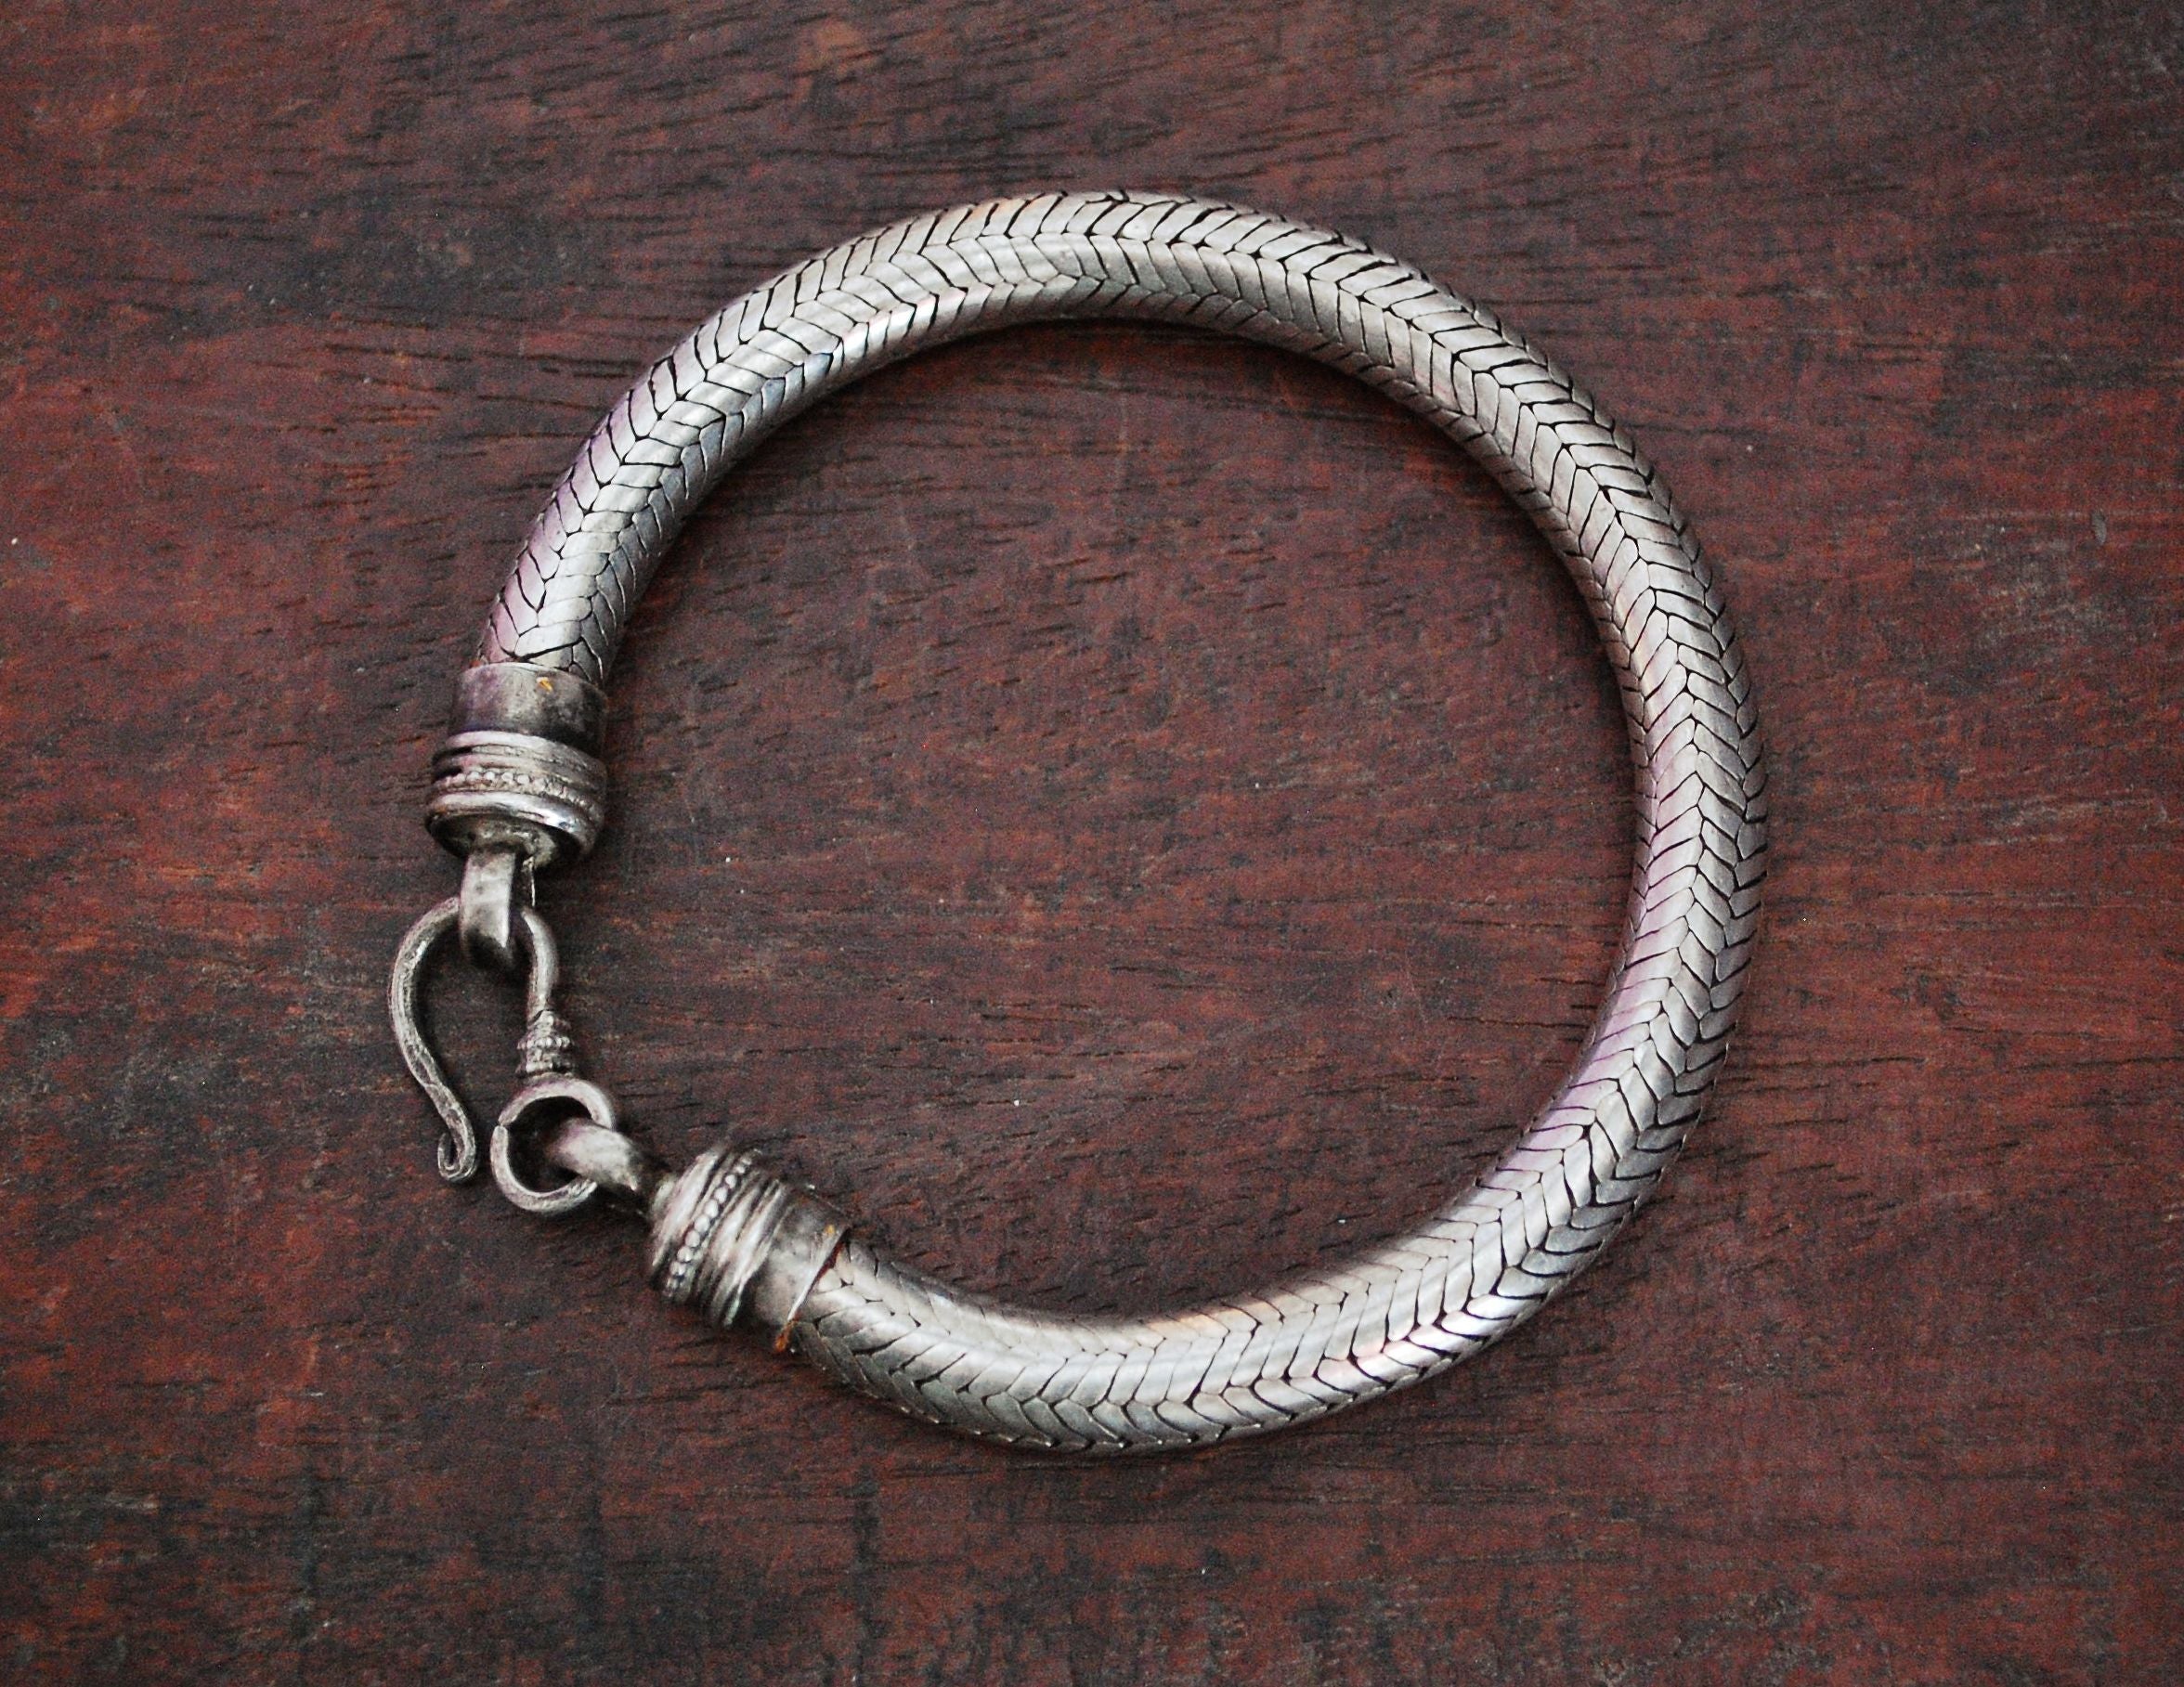 Massive Rajasthan Snake Chain Bracelet